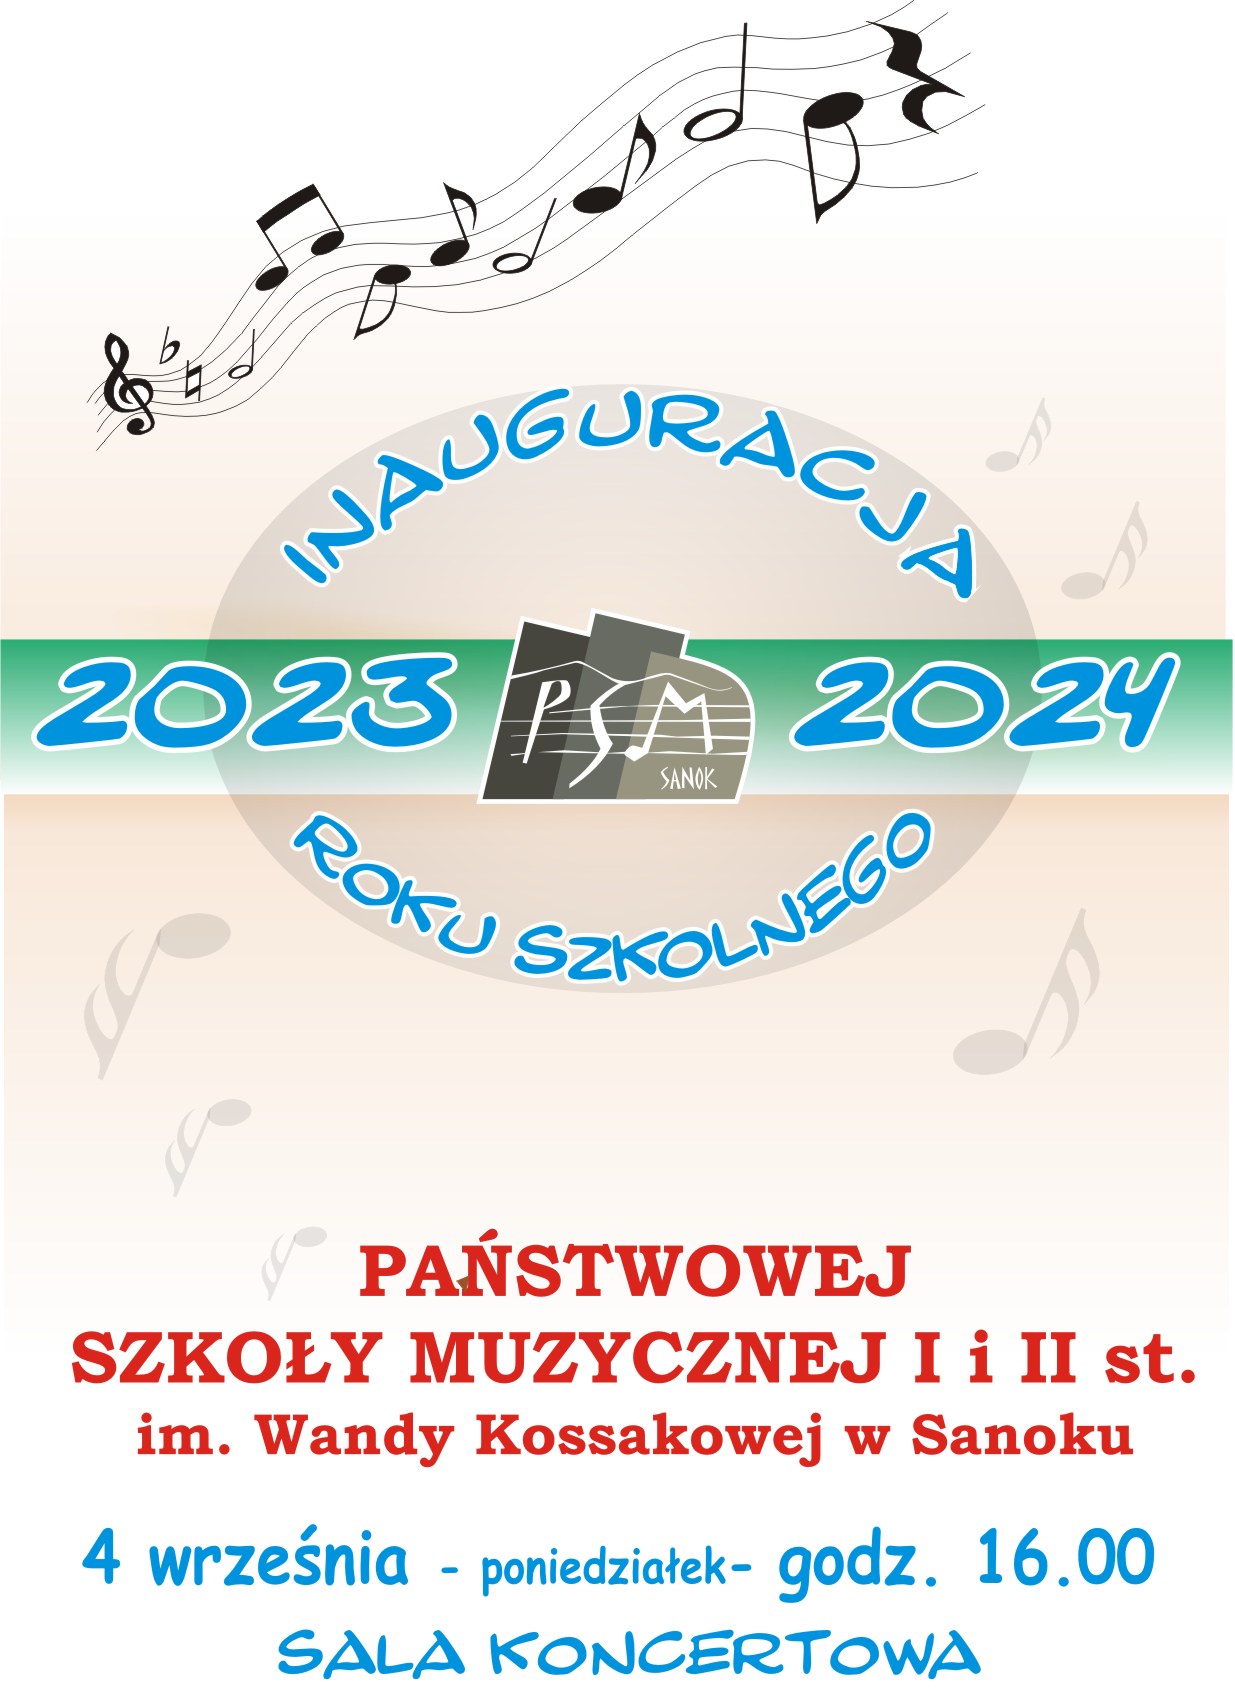 Plakat Inauguracji Roku Szkolnego 2023-2024 Państwowej Szkoły Muzycznej I i II st. w Sanoku, niebieski i czerwone litery, w tle szare nuty i logo szkoły